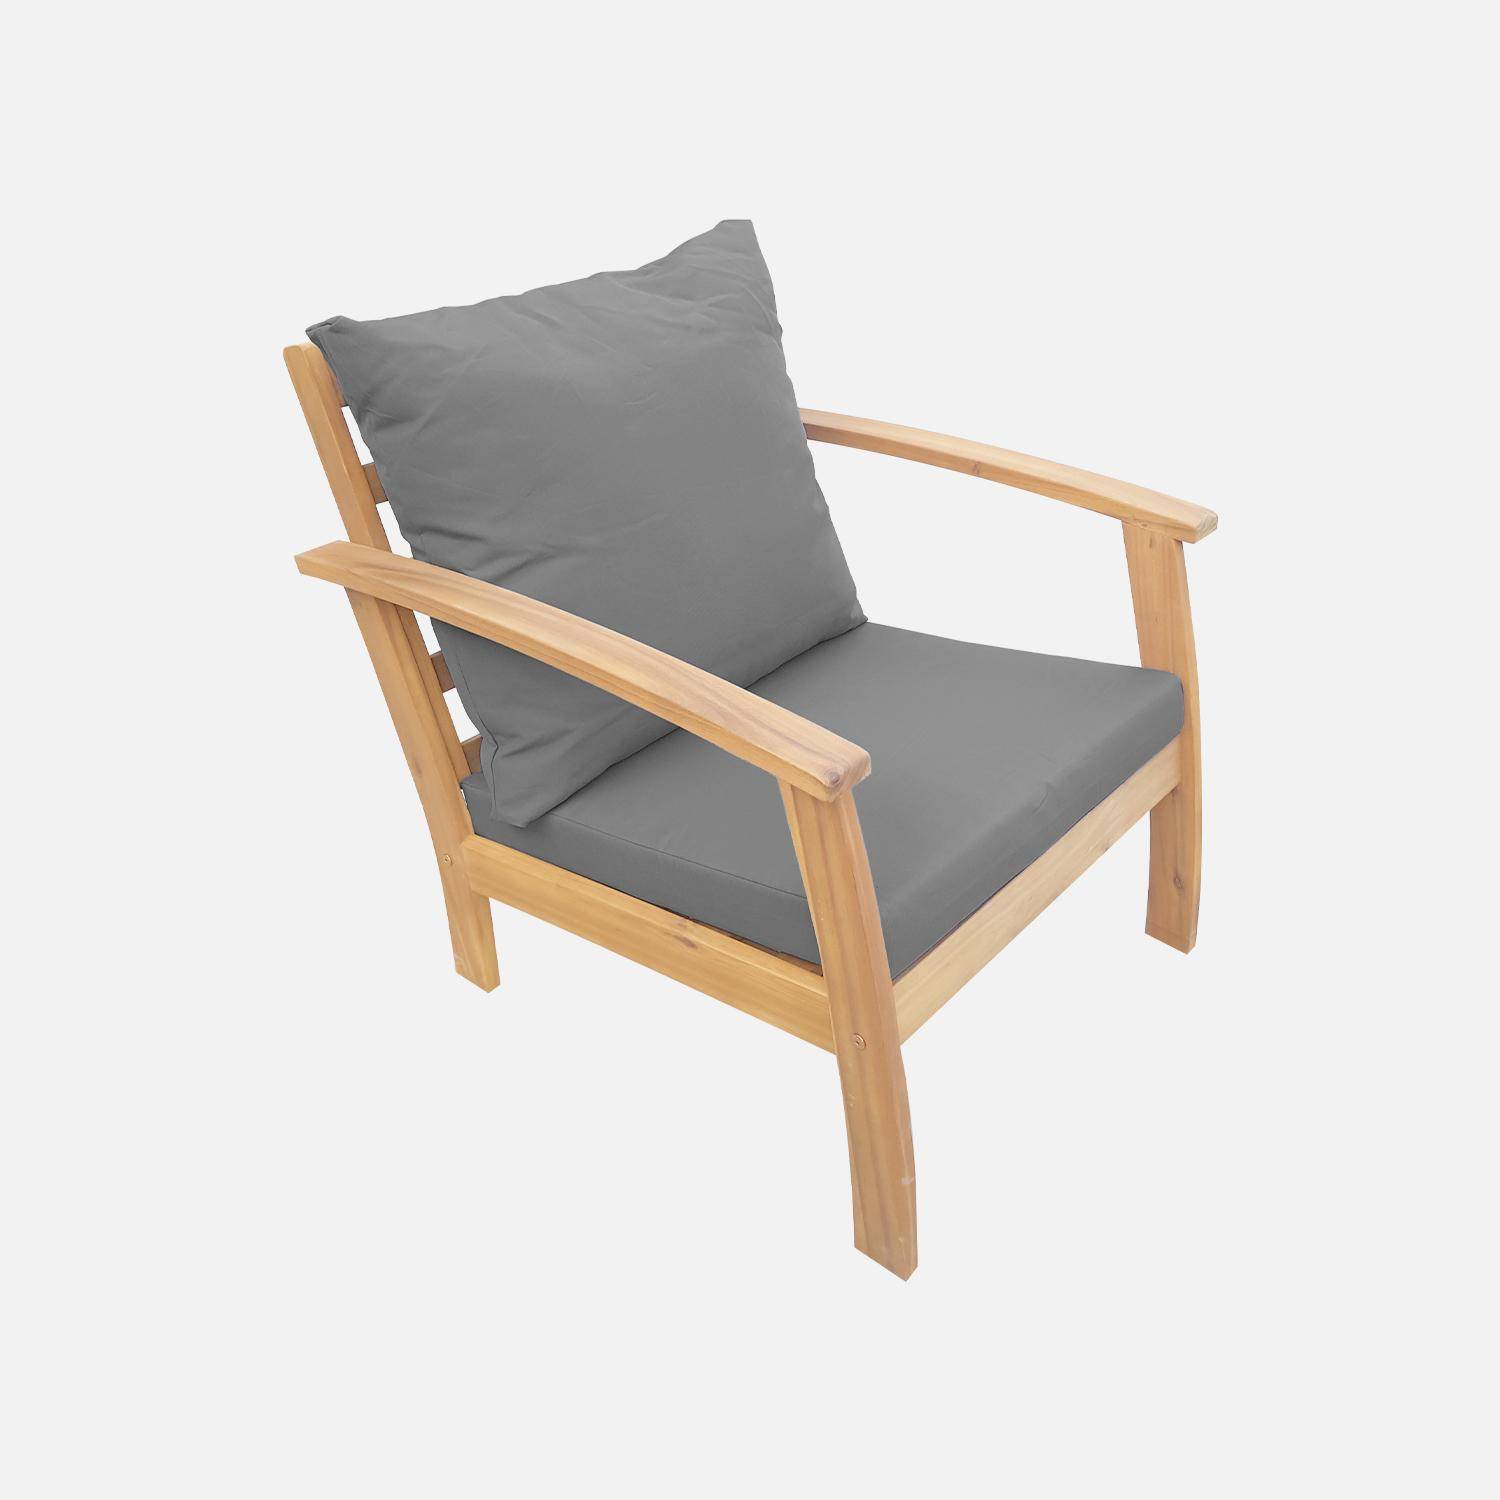 Salon de jardin en bois 4 places - Ushuaïa - Coussins gris, canapé, fauteuils et table basse en acacia, design Photo4